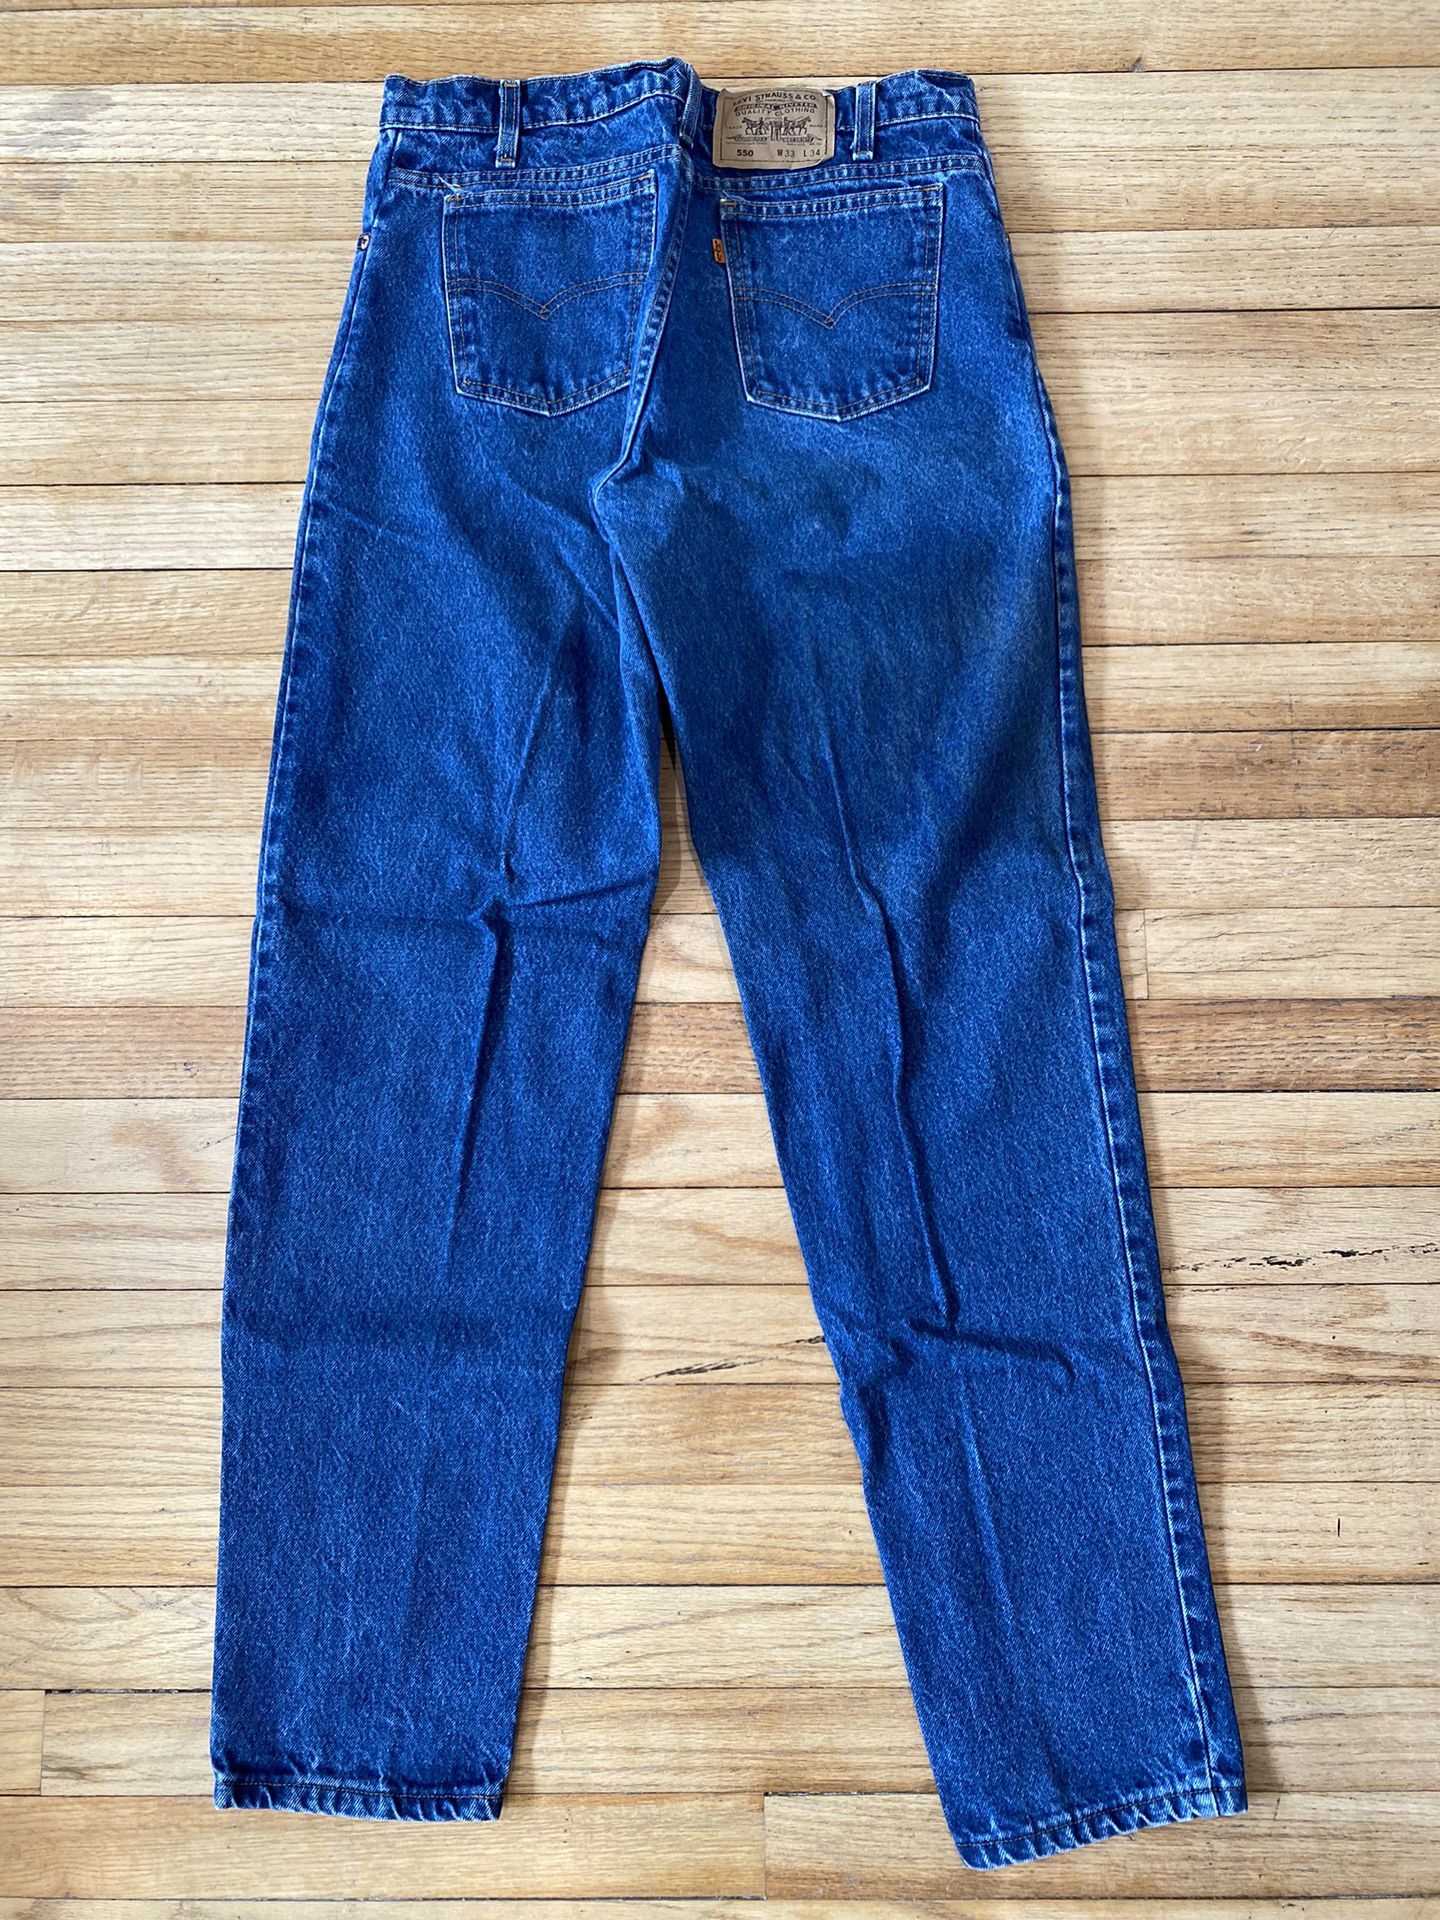 Men’s Levi’s 550Jeans Vintage 